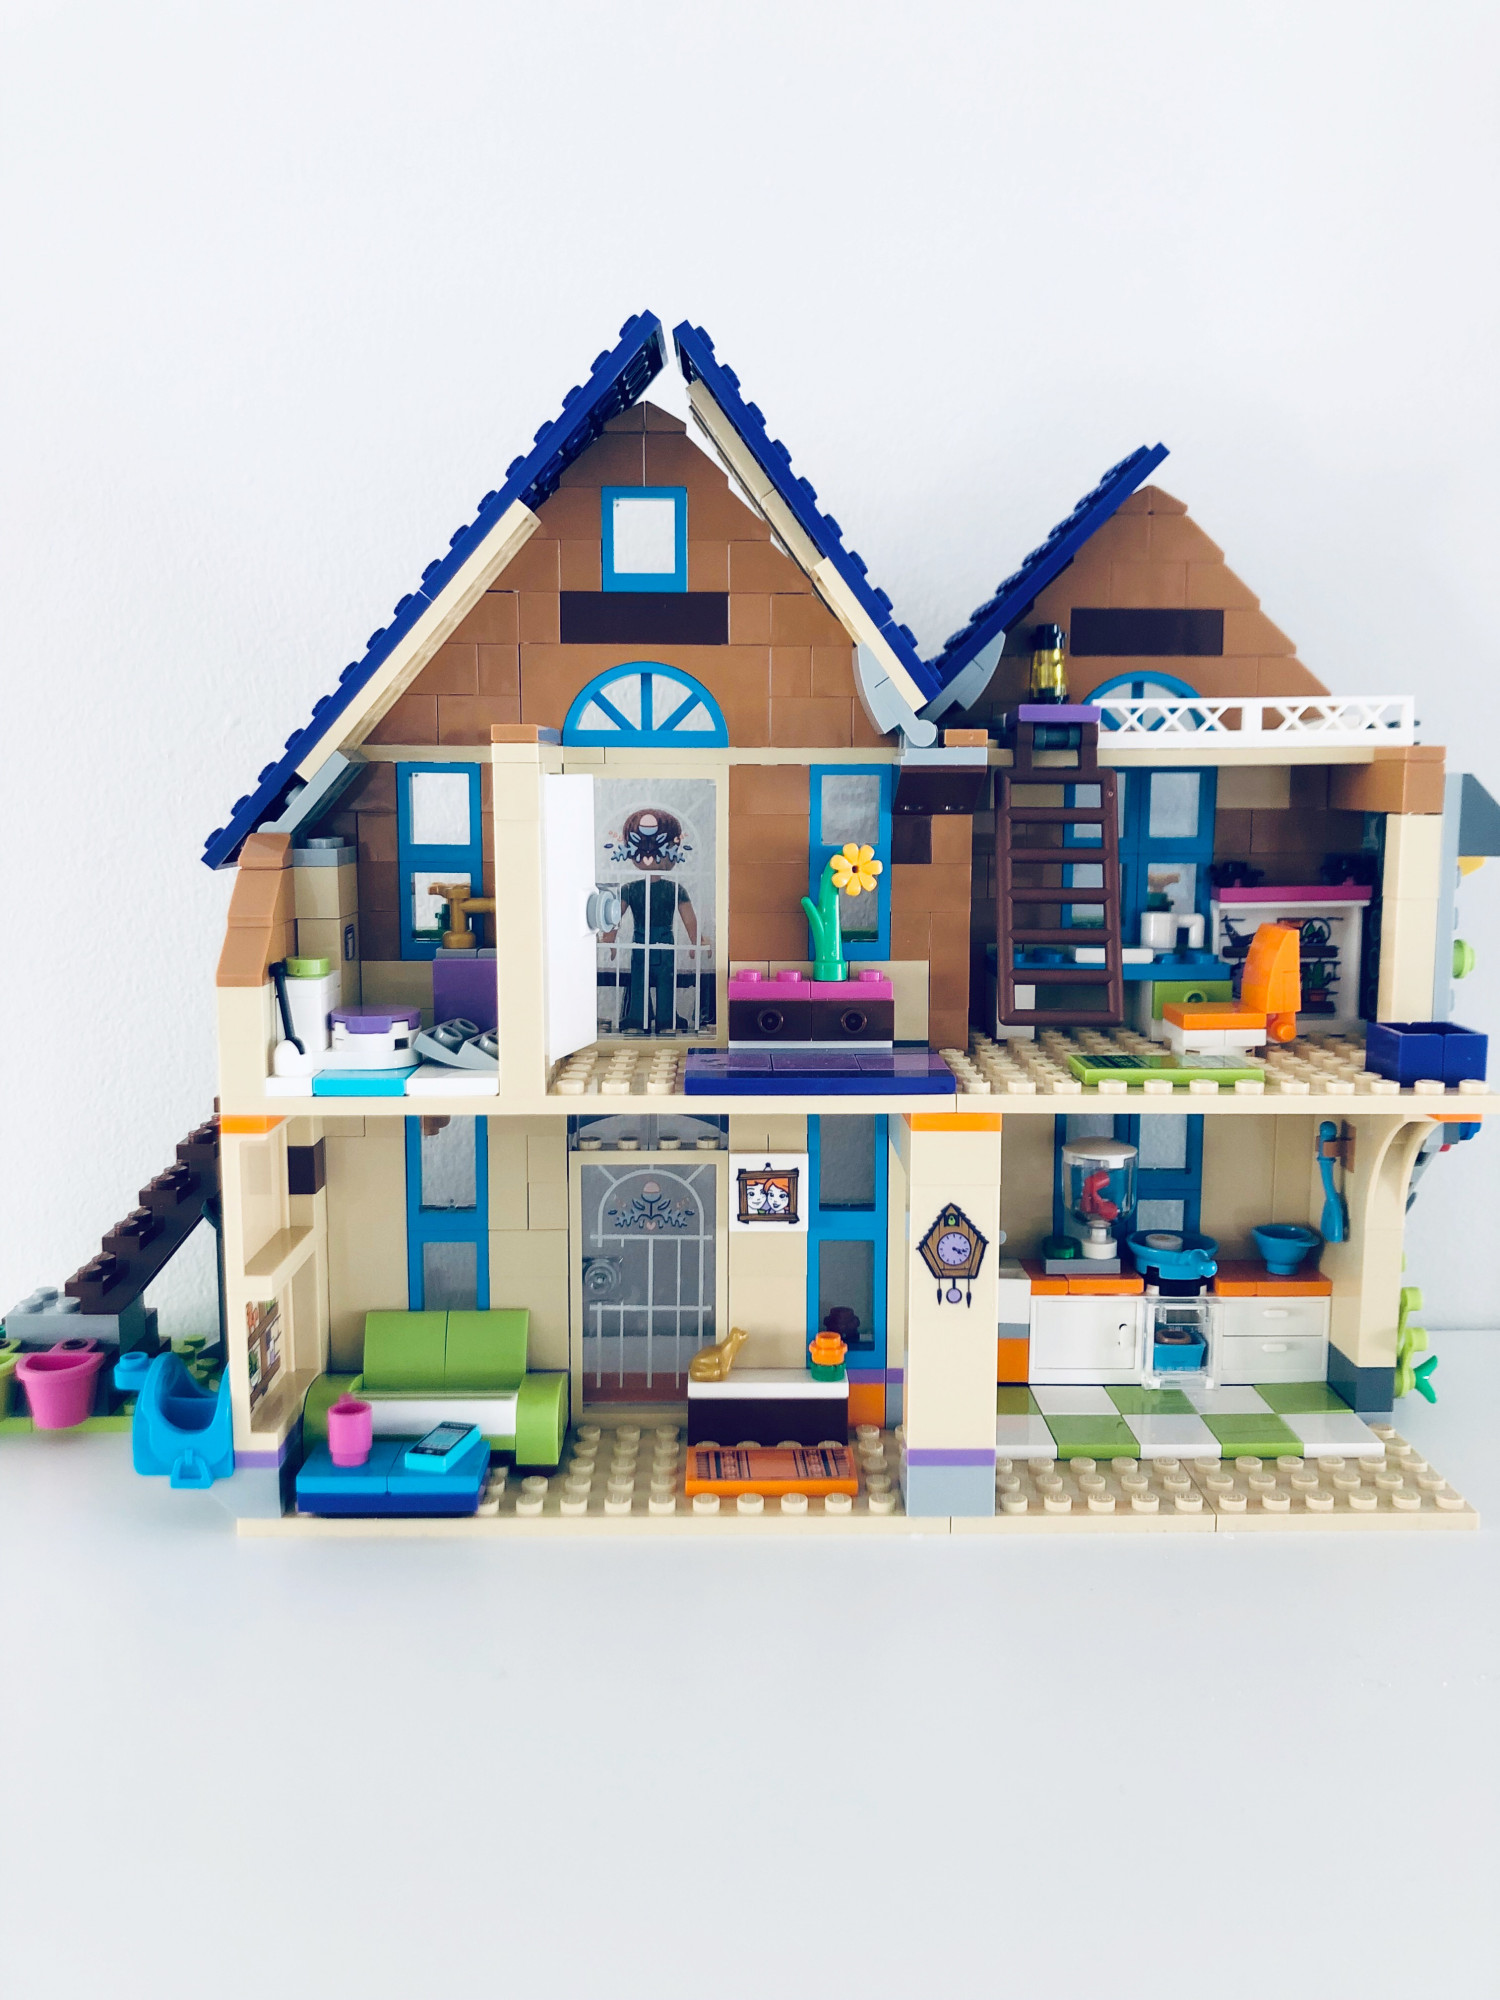 TEST LEGO FRIENDS og LEGO CITY Børn Testfamilien